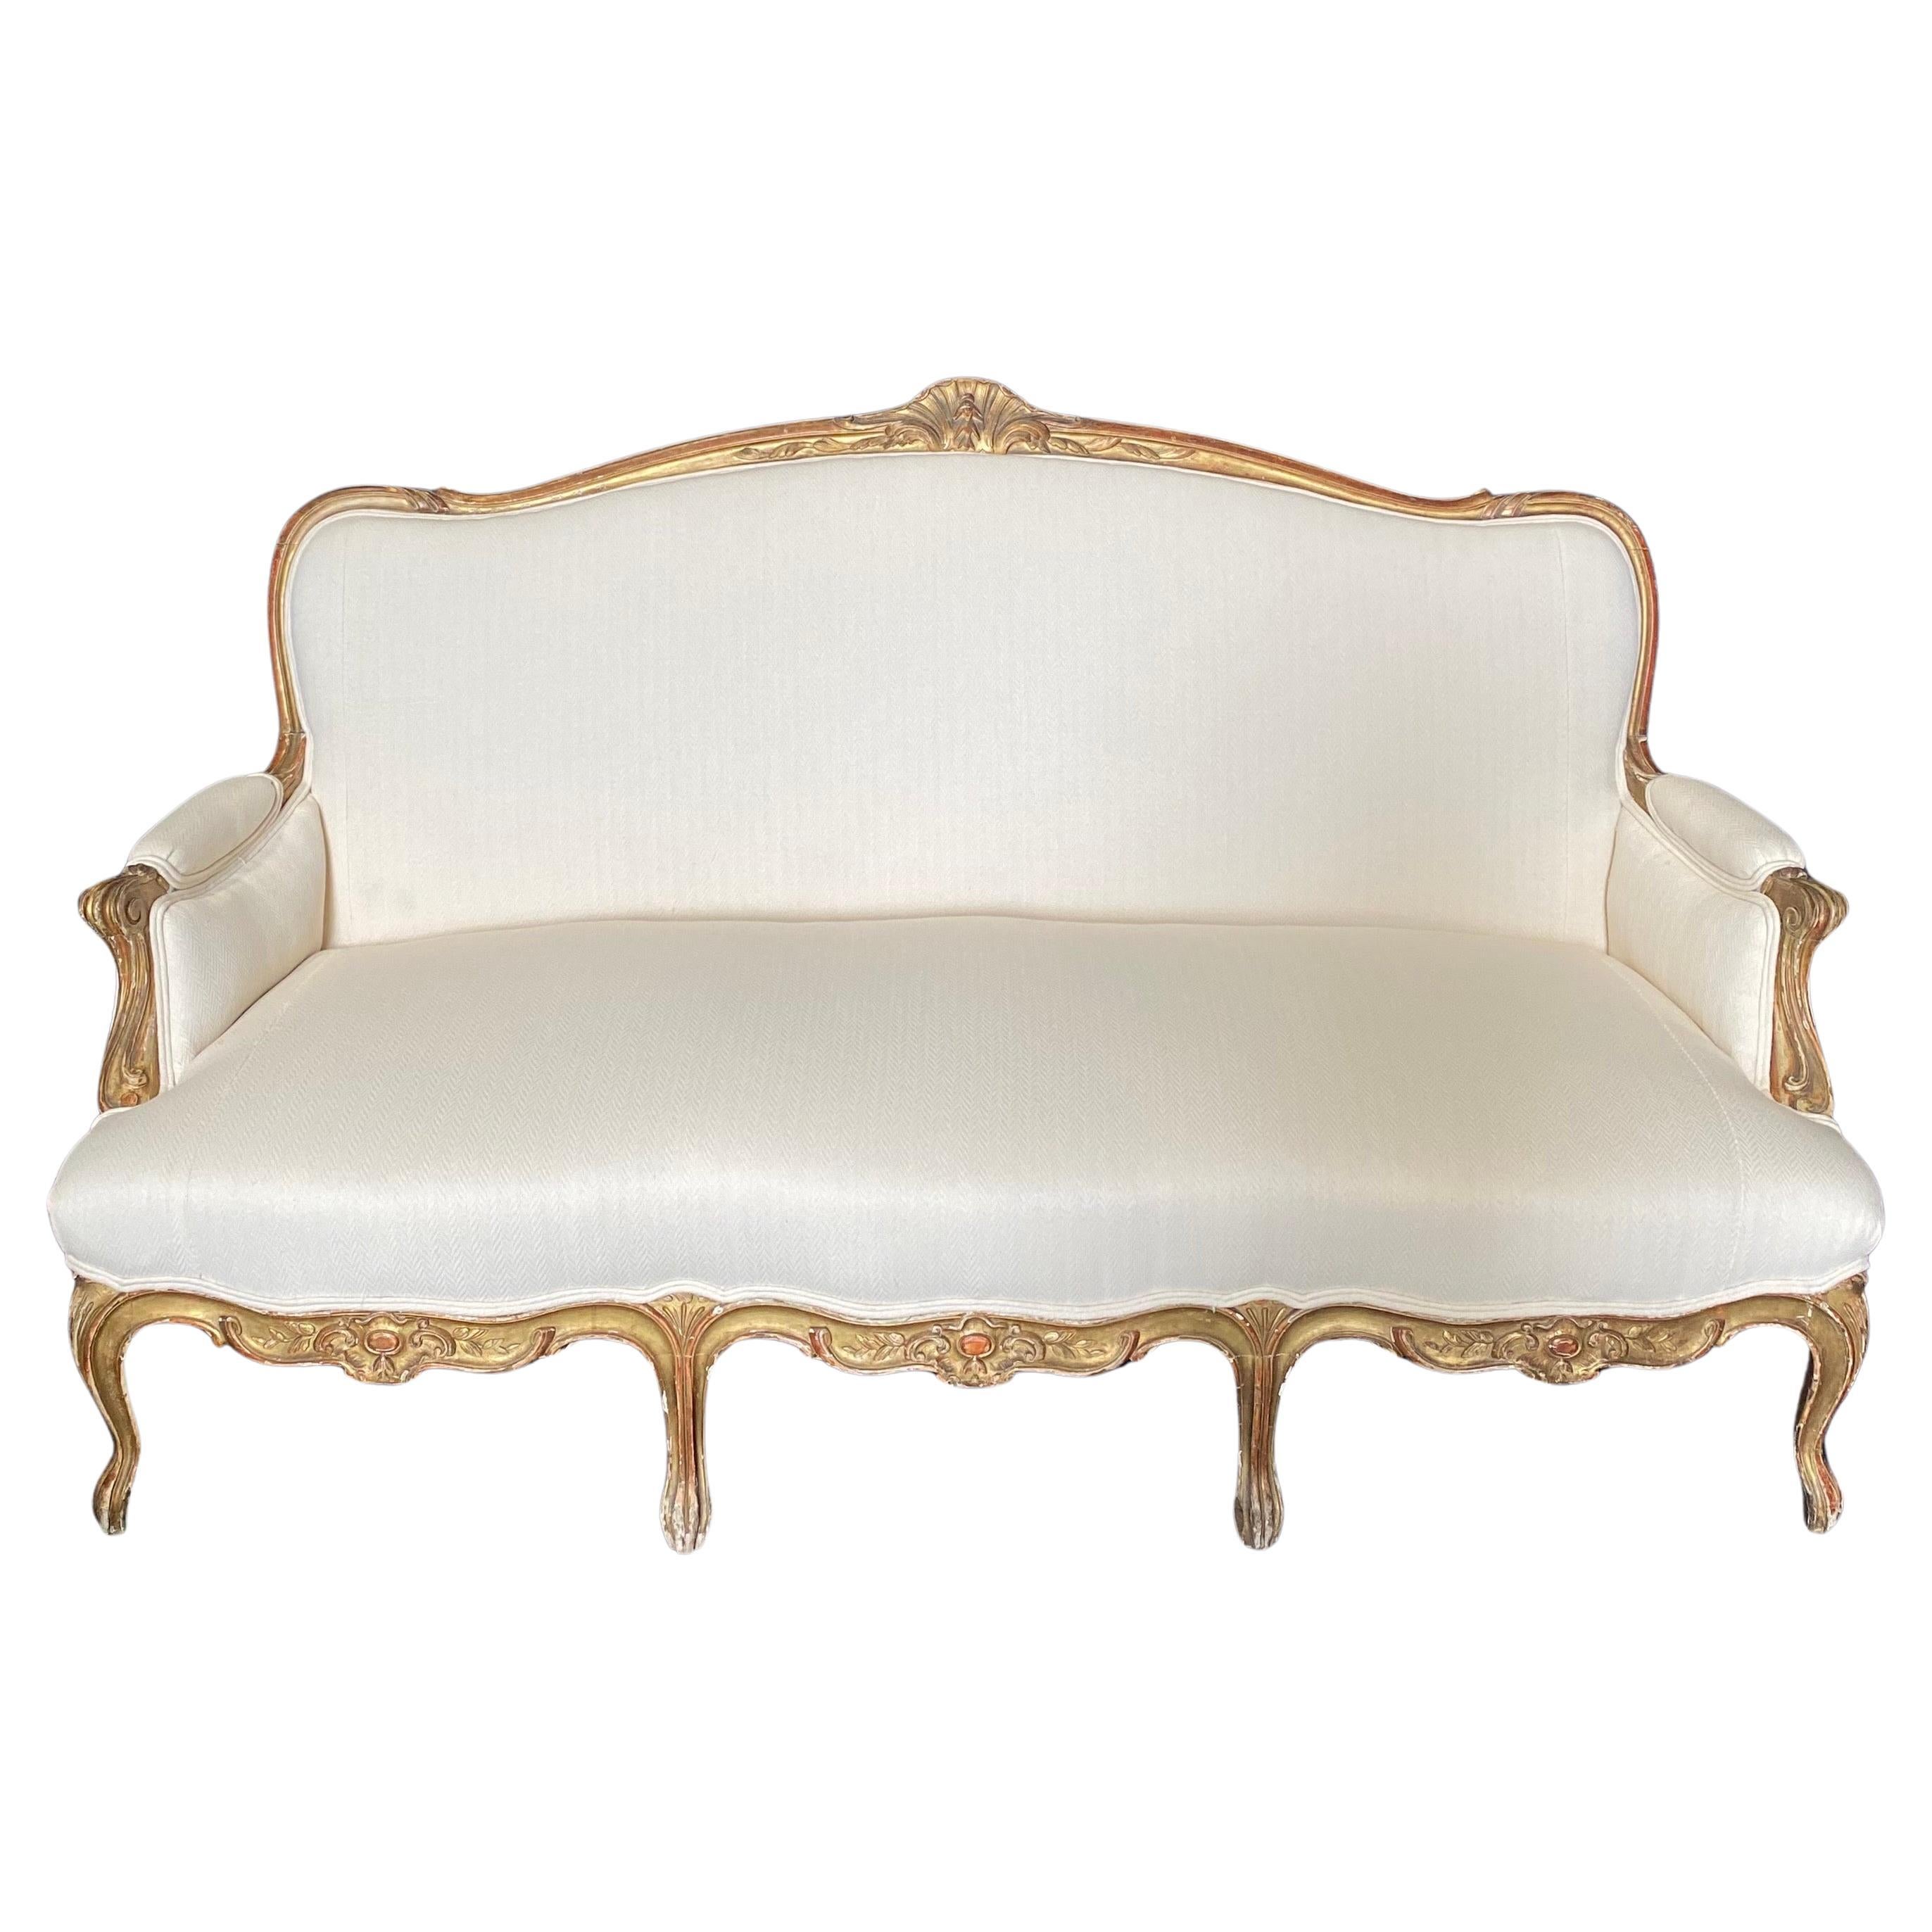 Hervorragend geschnitzt vergoldet 19. Jahrhundert Louis XV Französisch provenzalischen Sofa